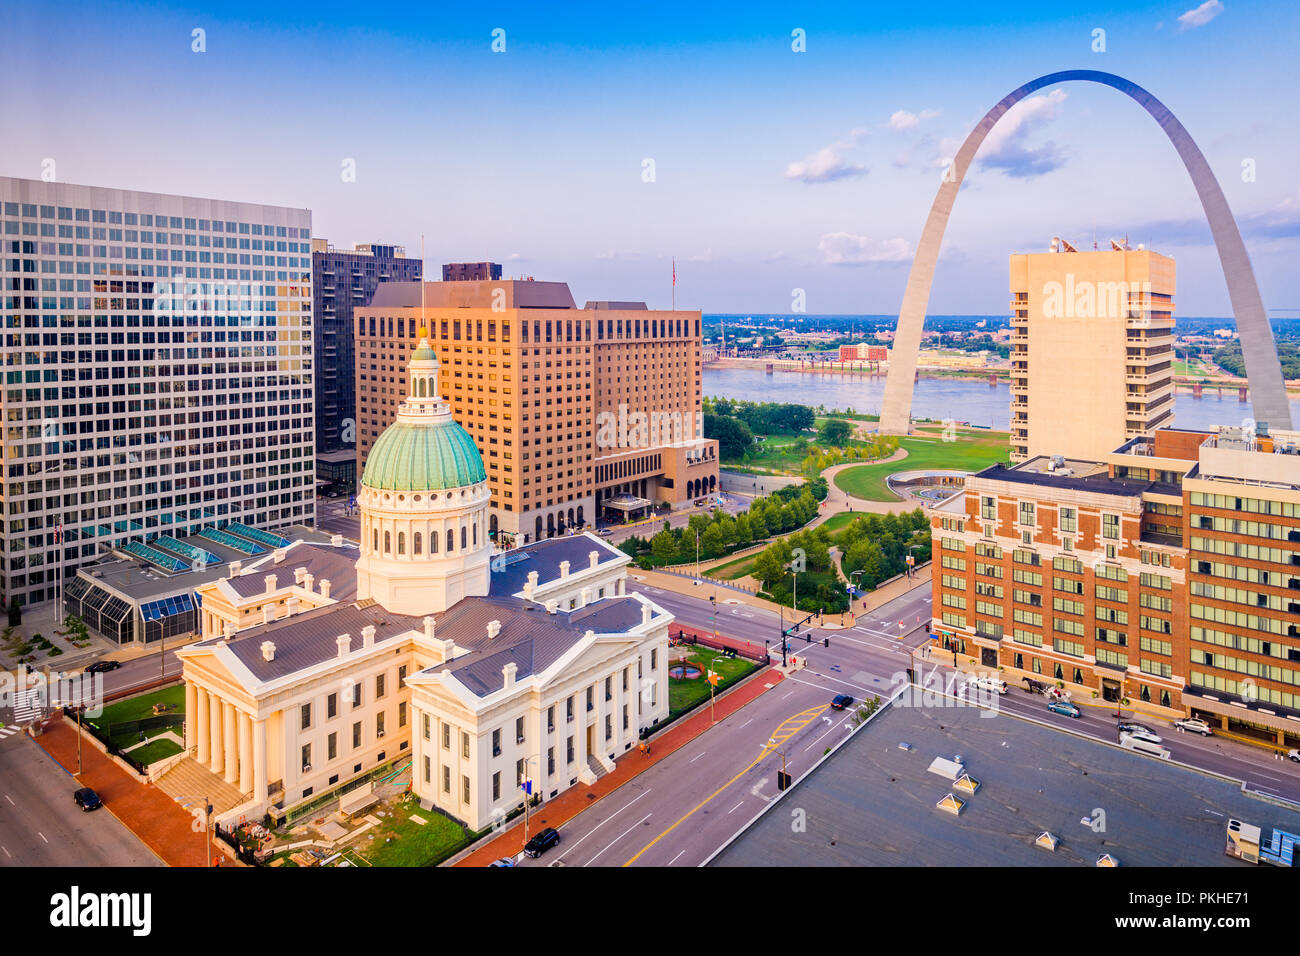 Louis, Missouri negli Stati Uniti d'America downtown cityscape con l'arco e il palazzo di giustizia al crepuscolo. Foto Stock